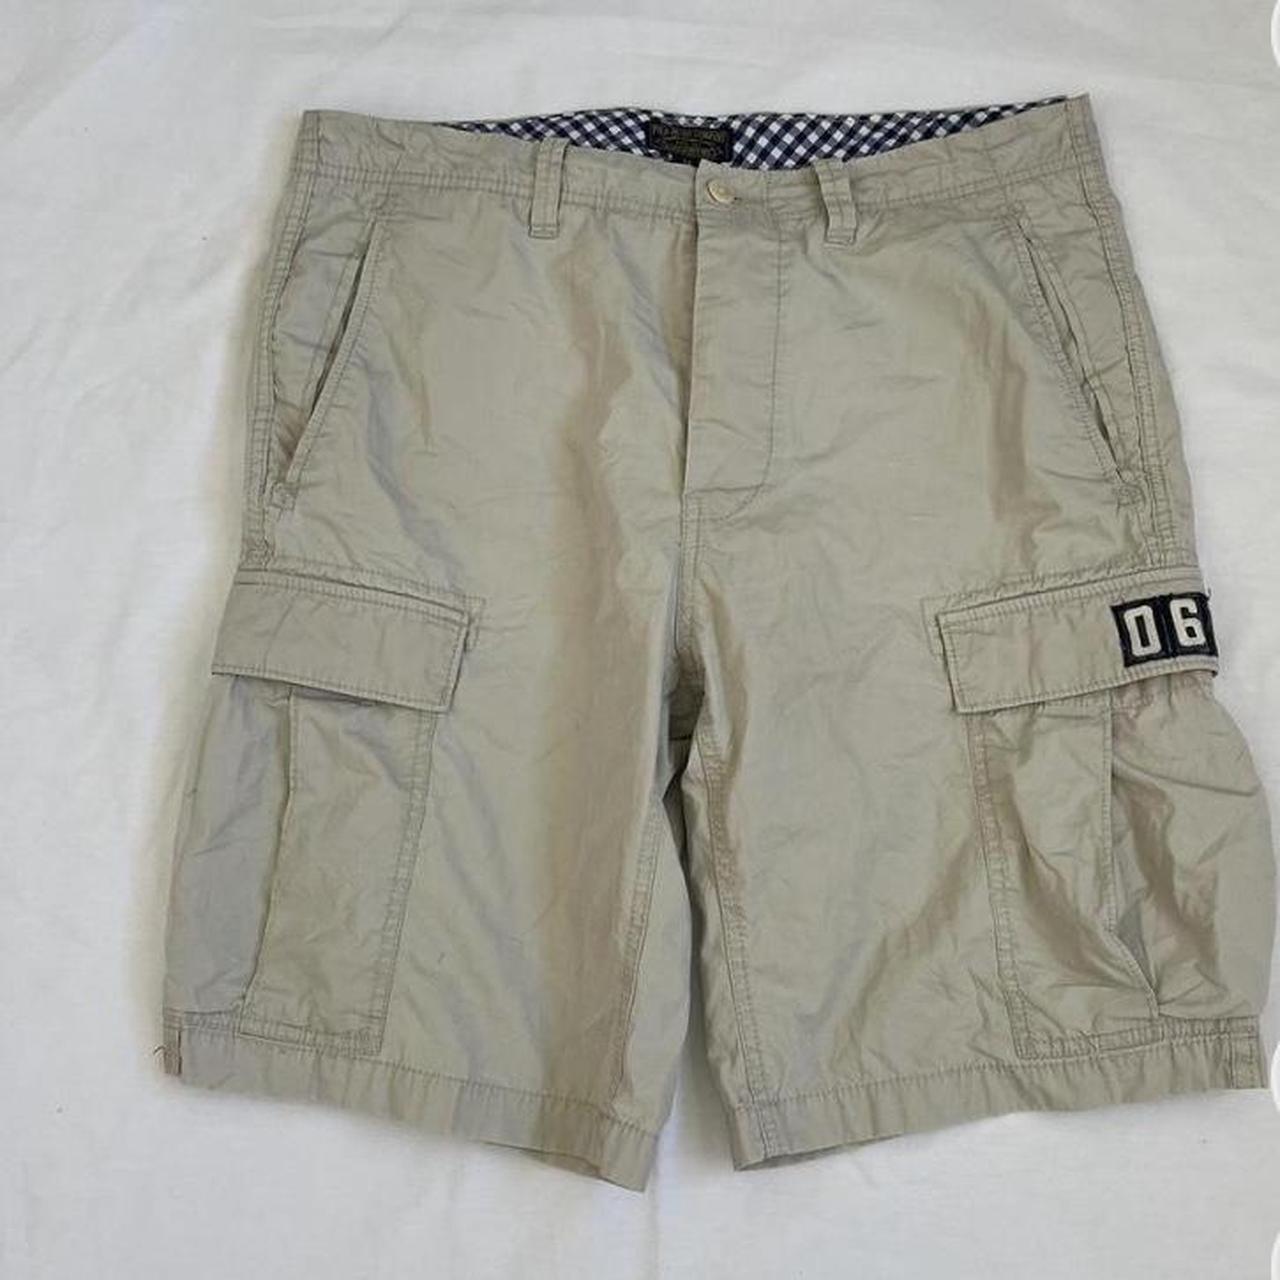 vintage polo ralph lauren cargo shorts size 34 - Depop